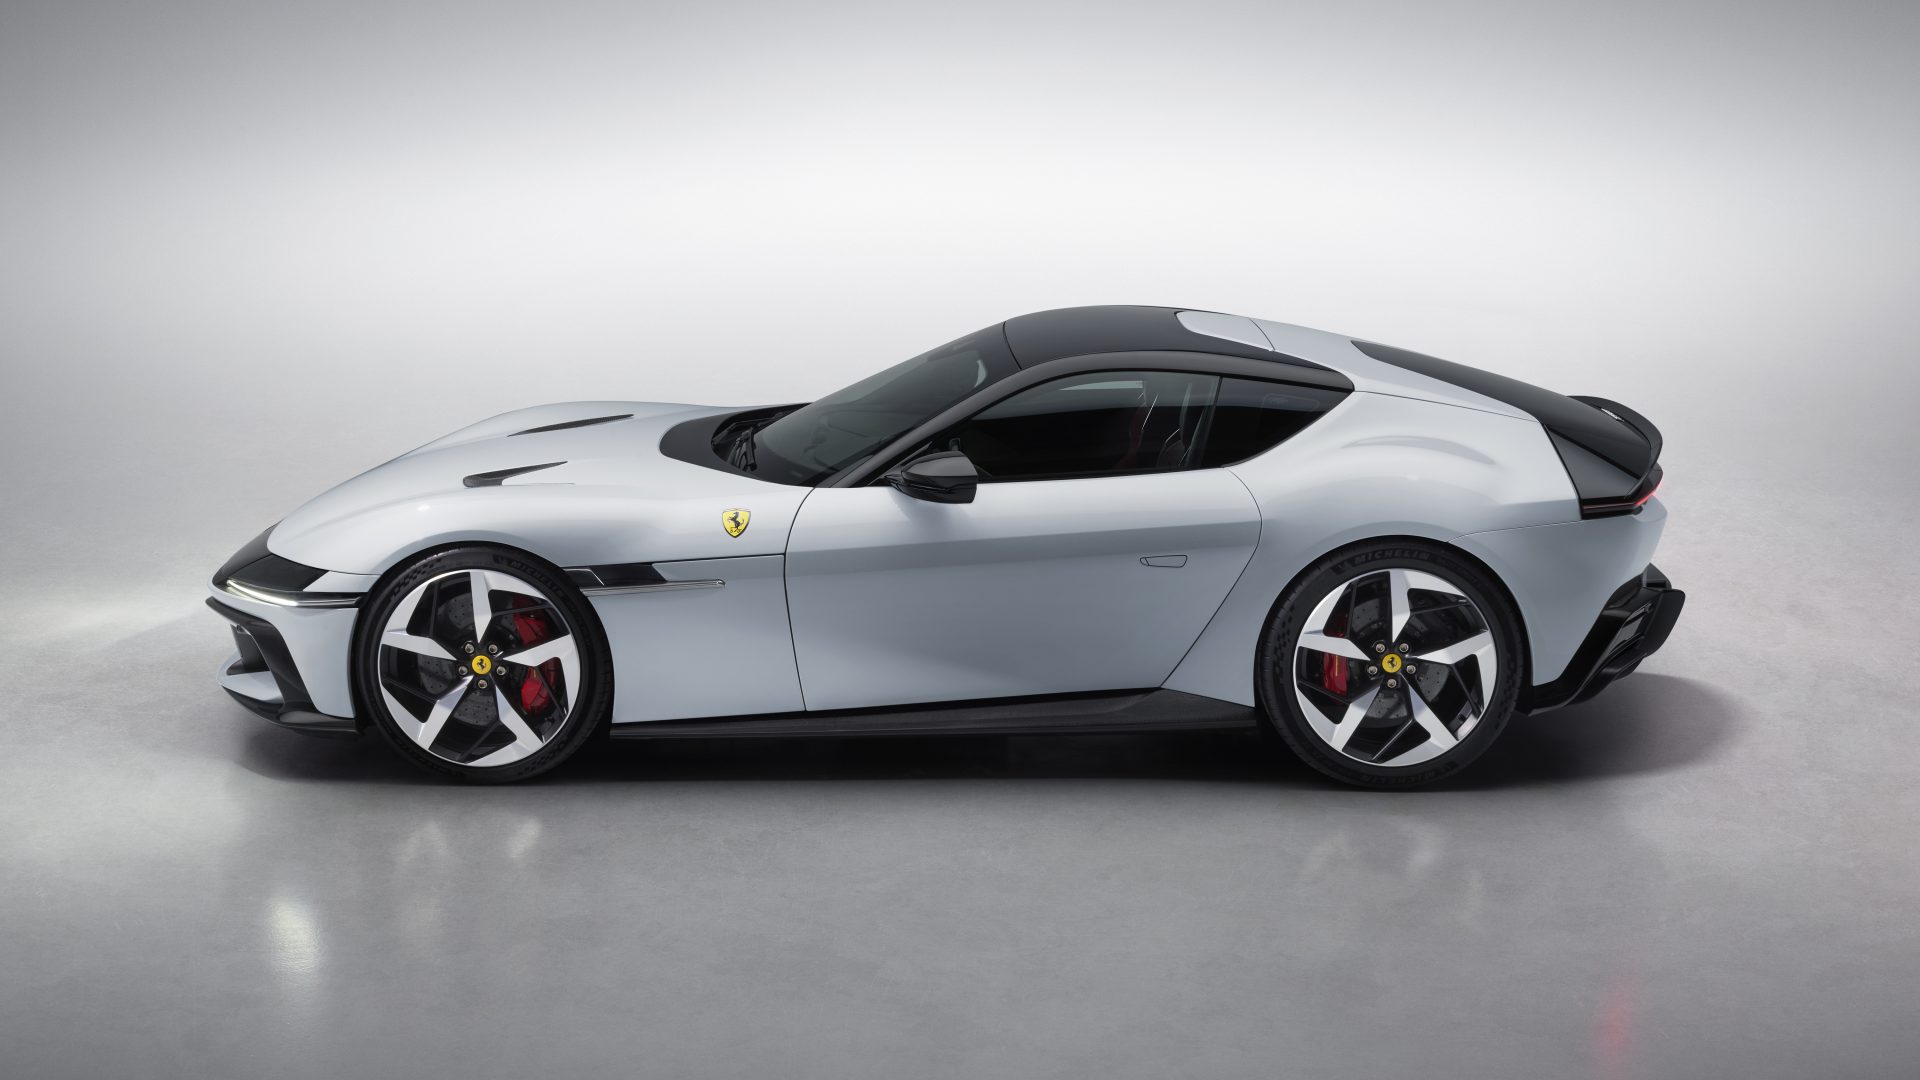 New Ferrari V12 ext 02 white media 995c2e4b 90b5 4696 a907 17a7ca228a38 Ferrari 12Cilindri : Μια σύγχρονη Daytona